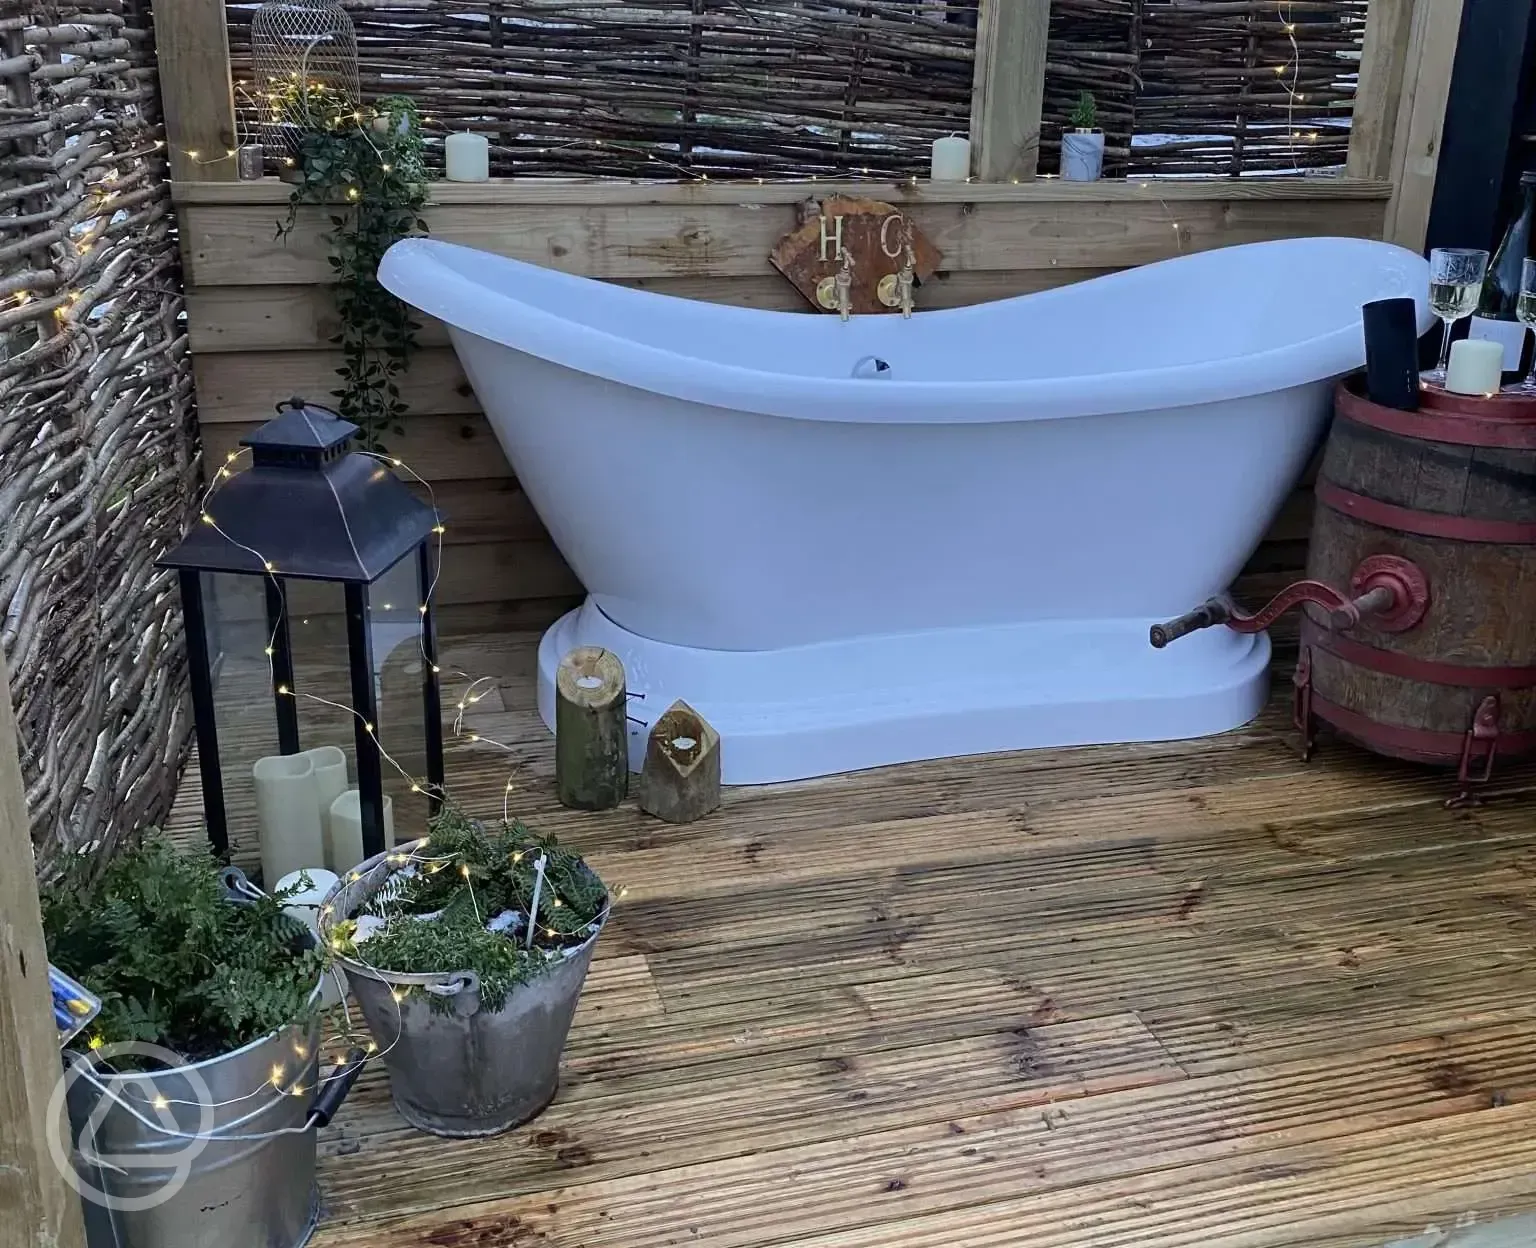 Outdoor bathtub